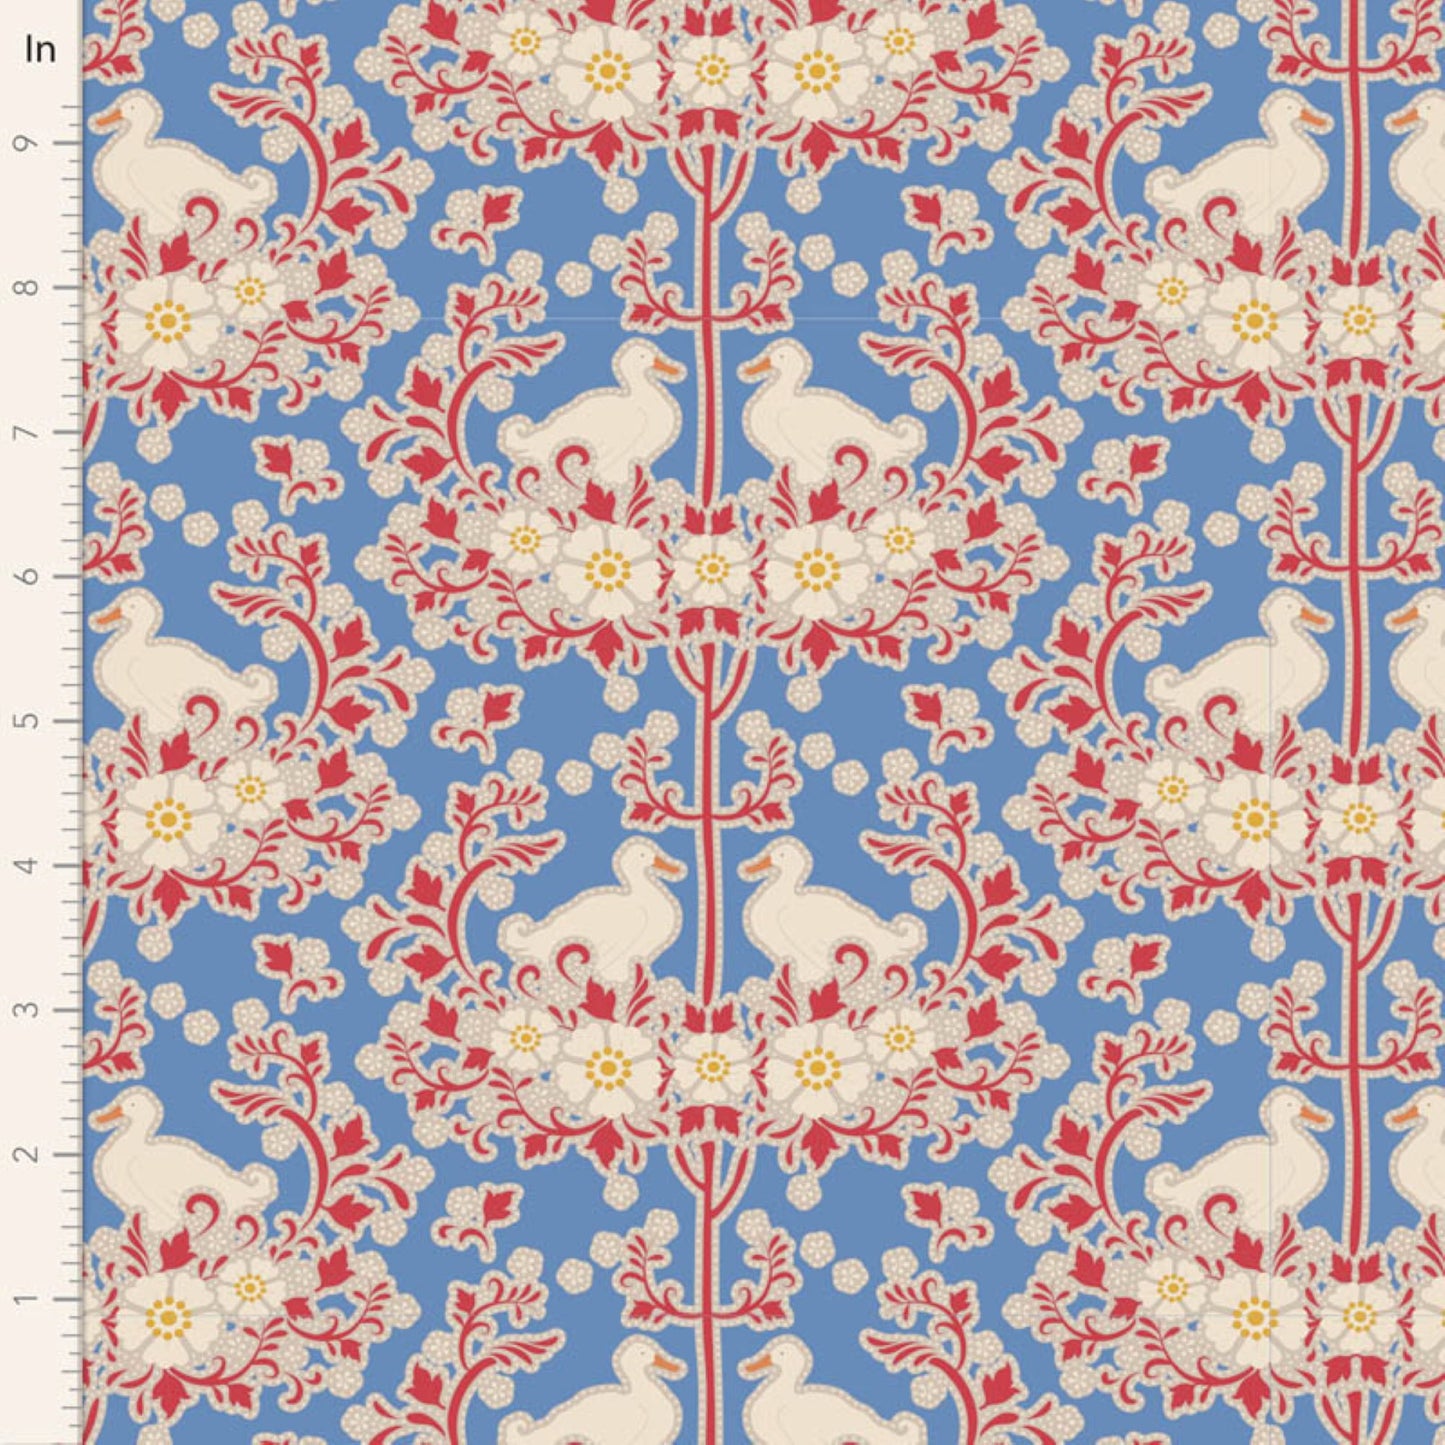 Tilda Jubilee and Flower Farm floral blue bundle 7 Fat Quarters cotton quilt fabric